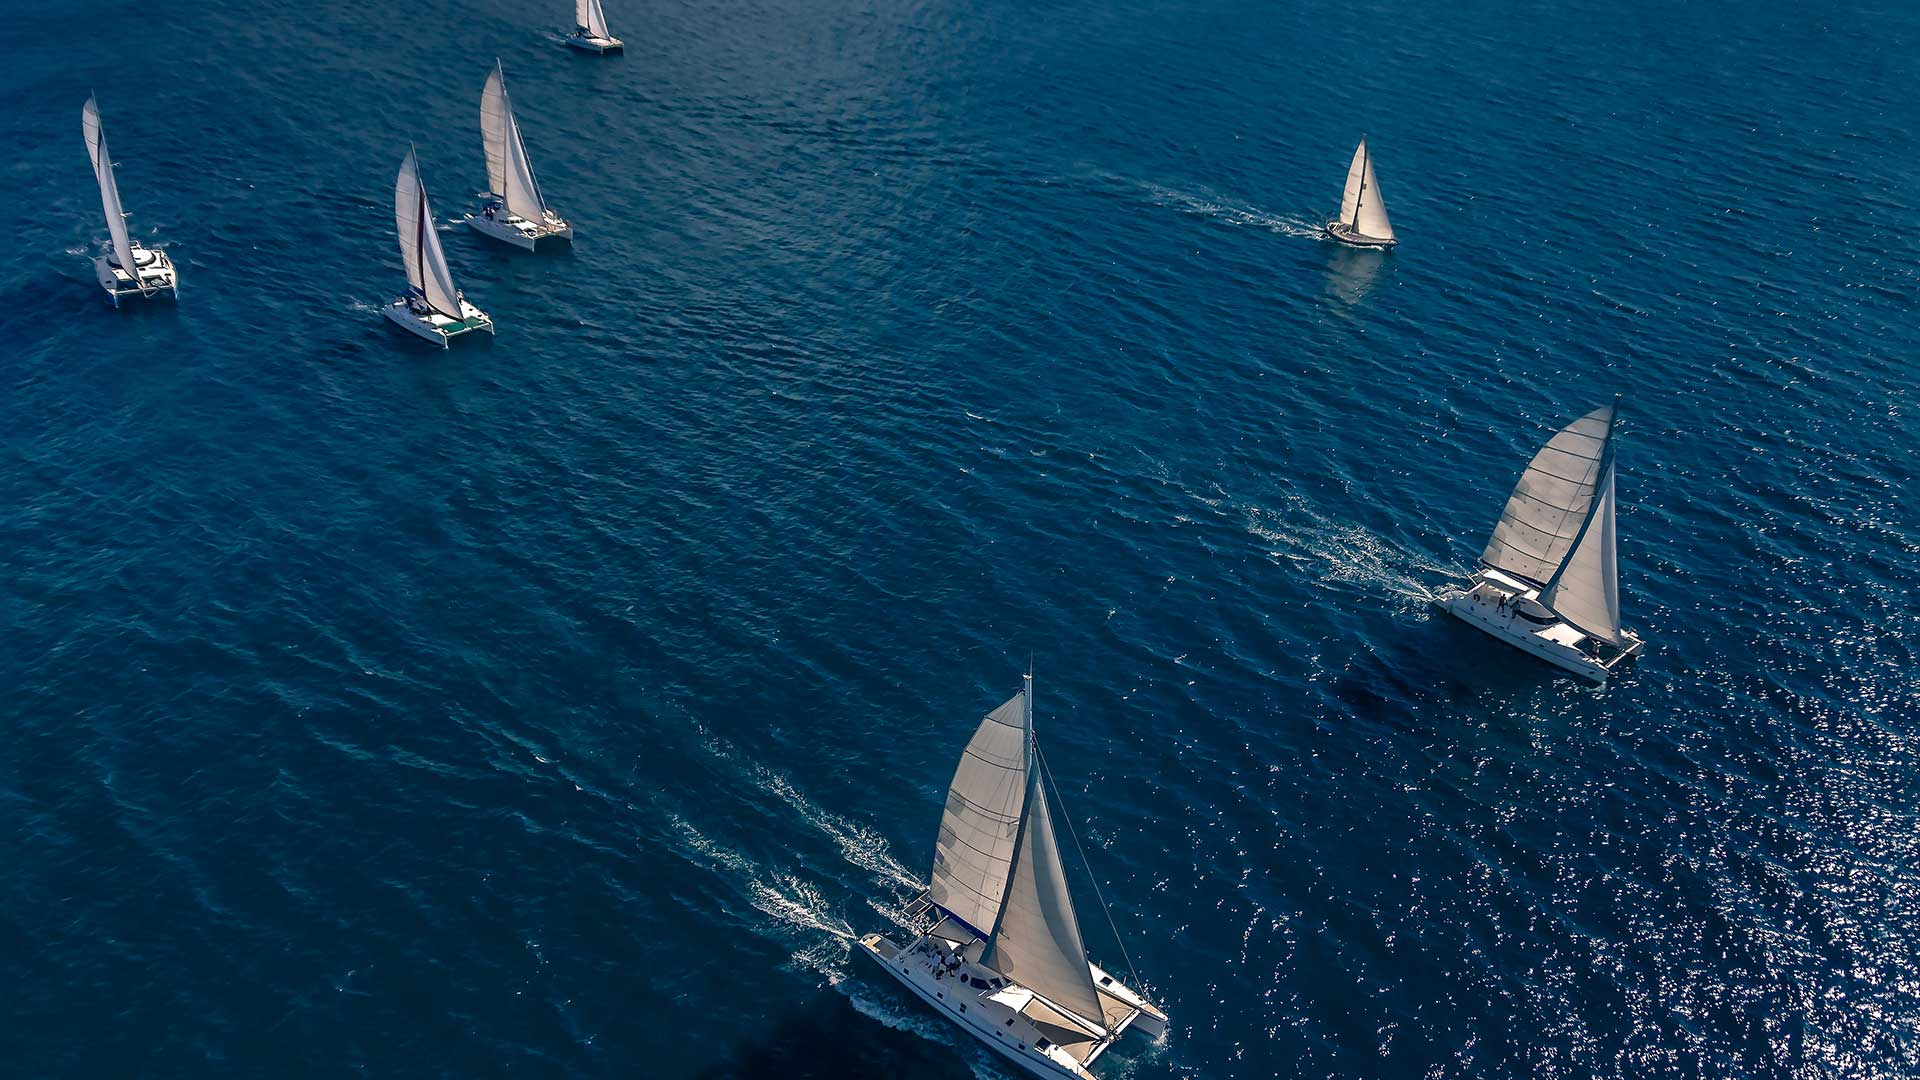 yachts on ocean